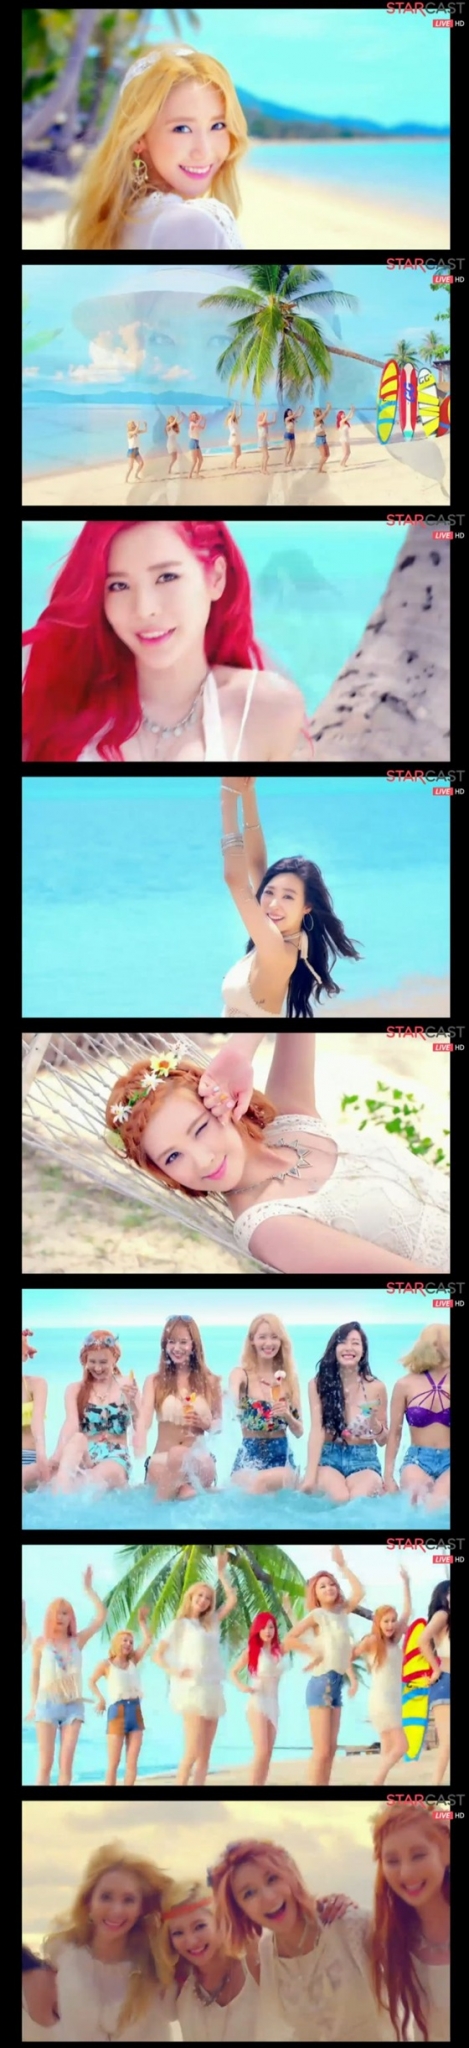 소녀시대 \'파티\' 뮤직비디오 /사진=네이버 TV캐스트 화면캡처